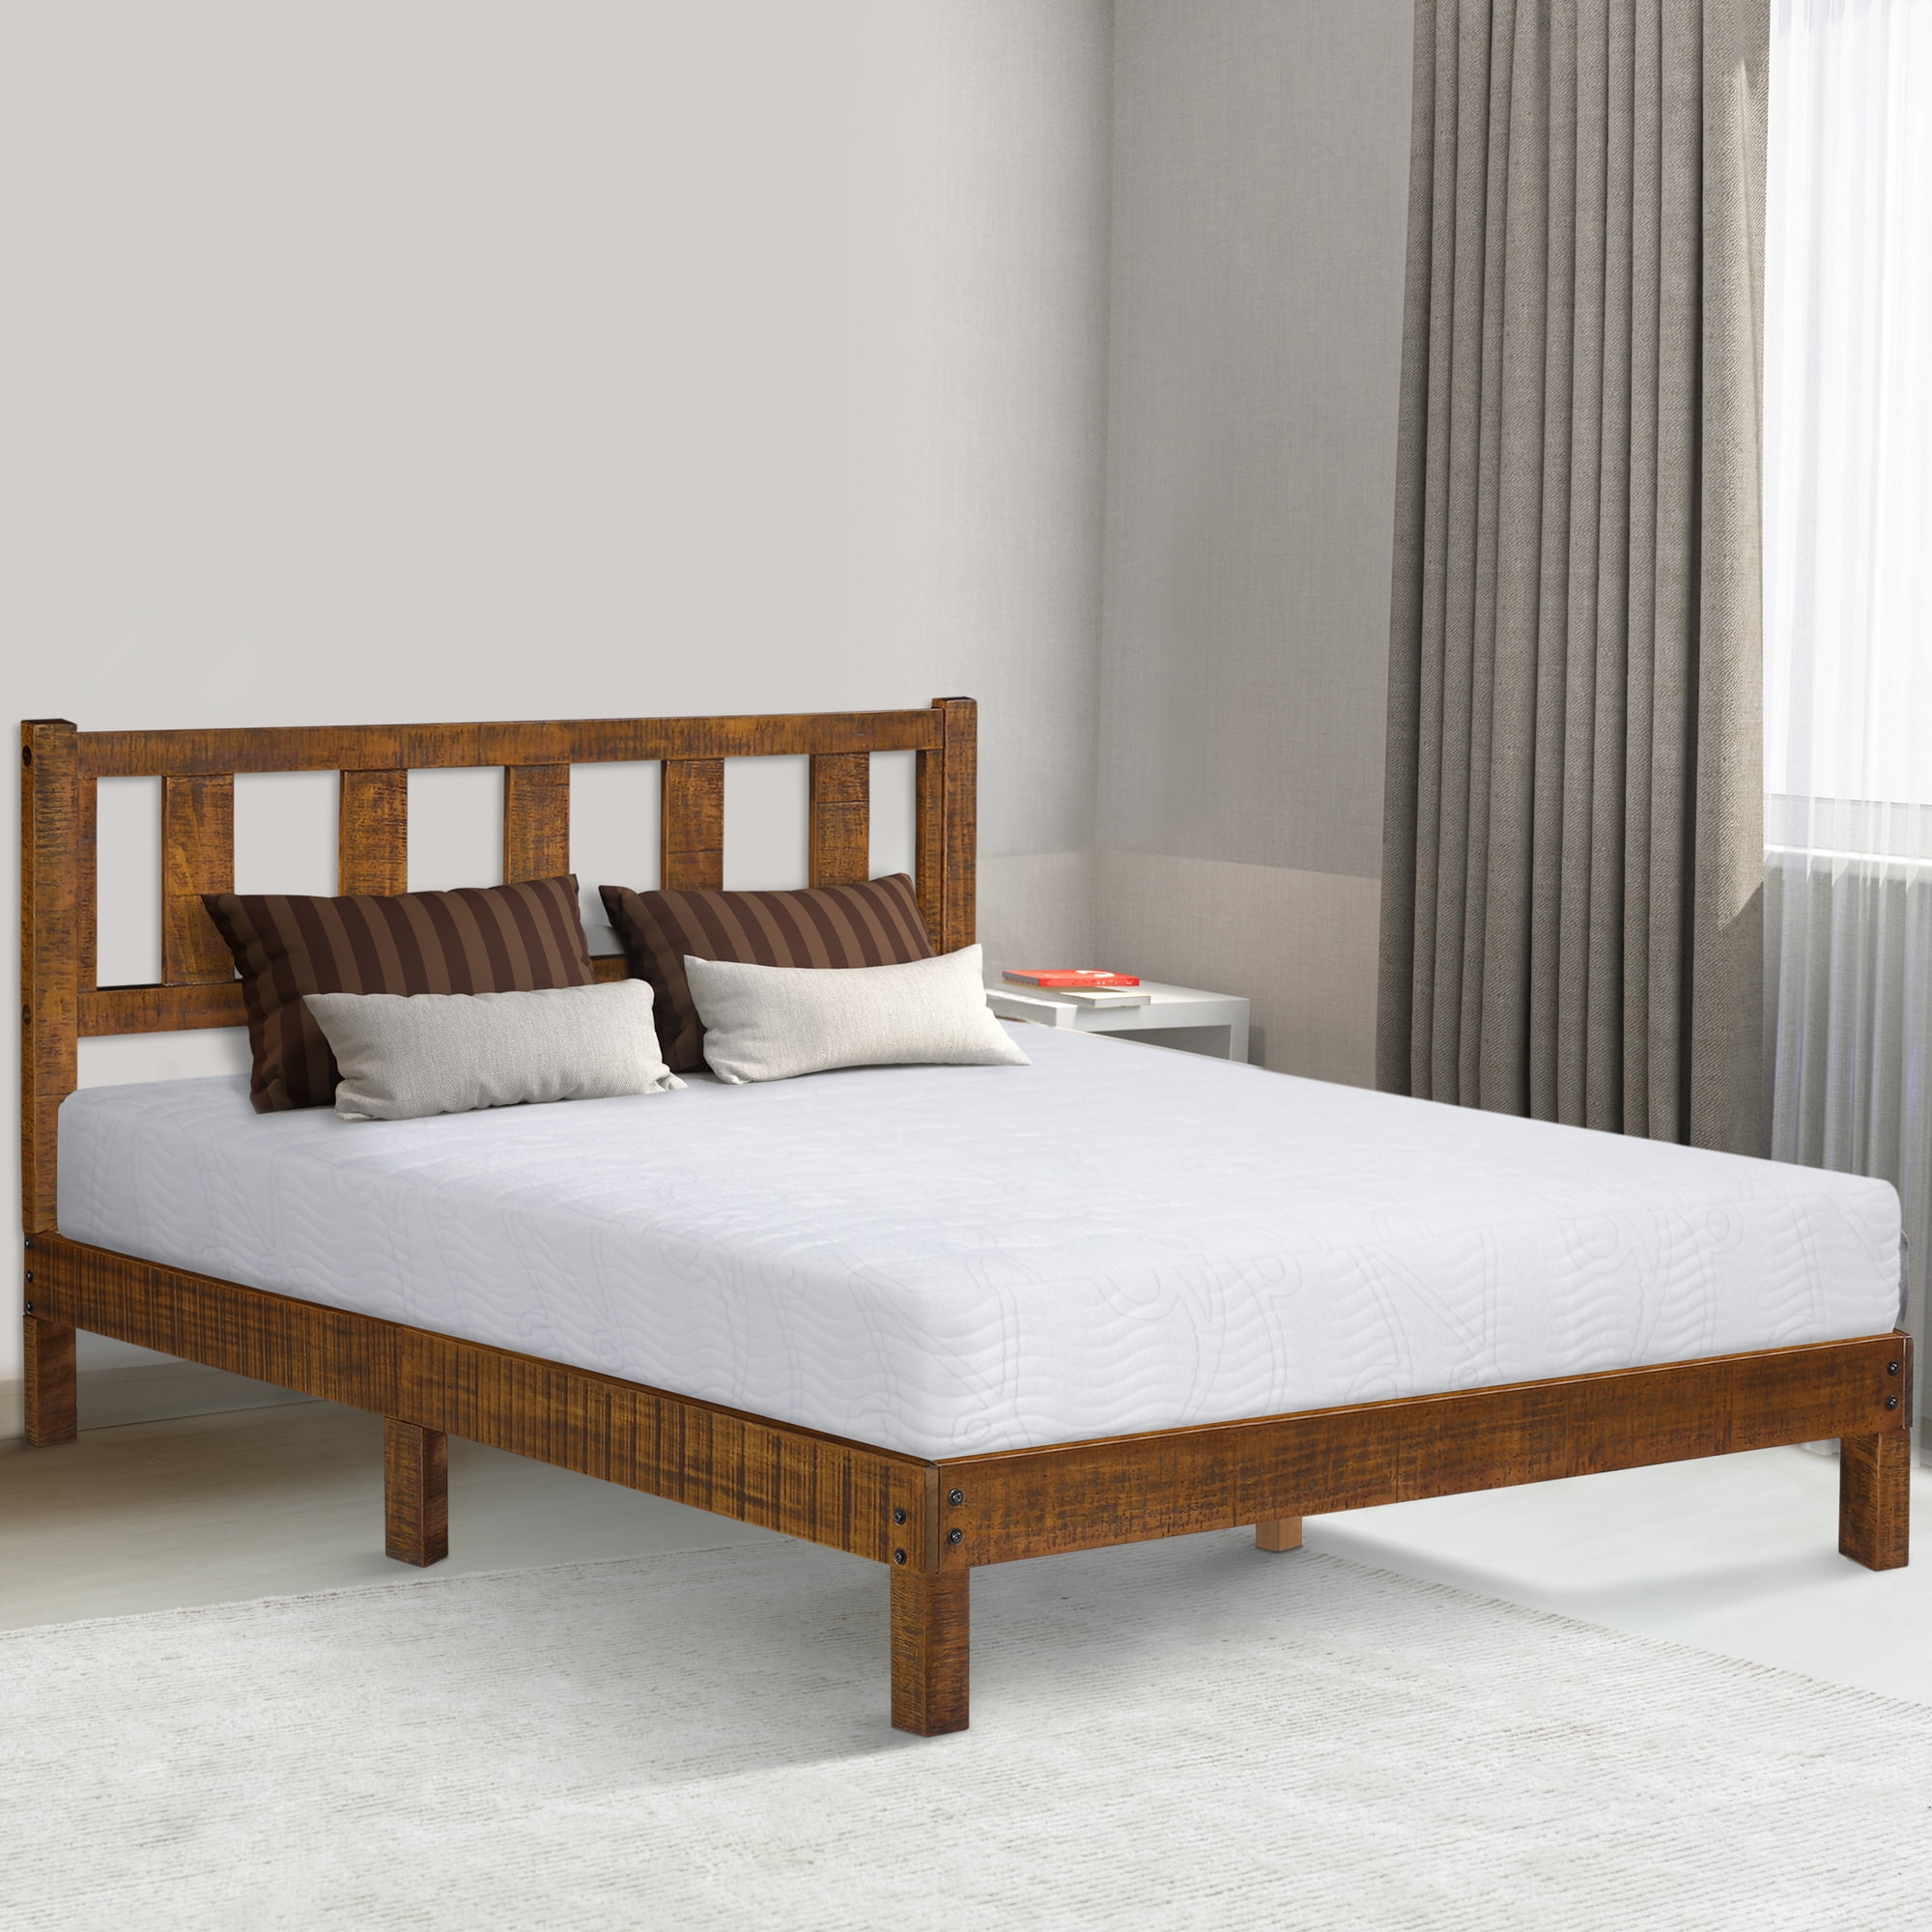 GrandRest 14 Inch Deluxe Solid Wood Platform Bed with Headboard, Queen